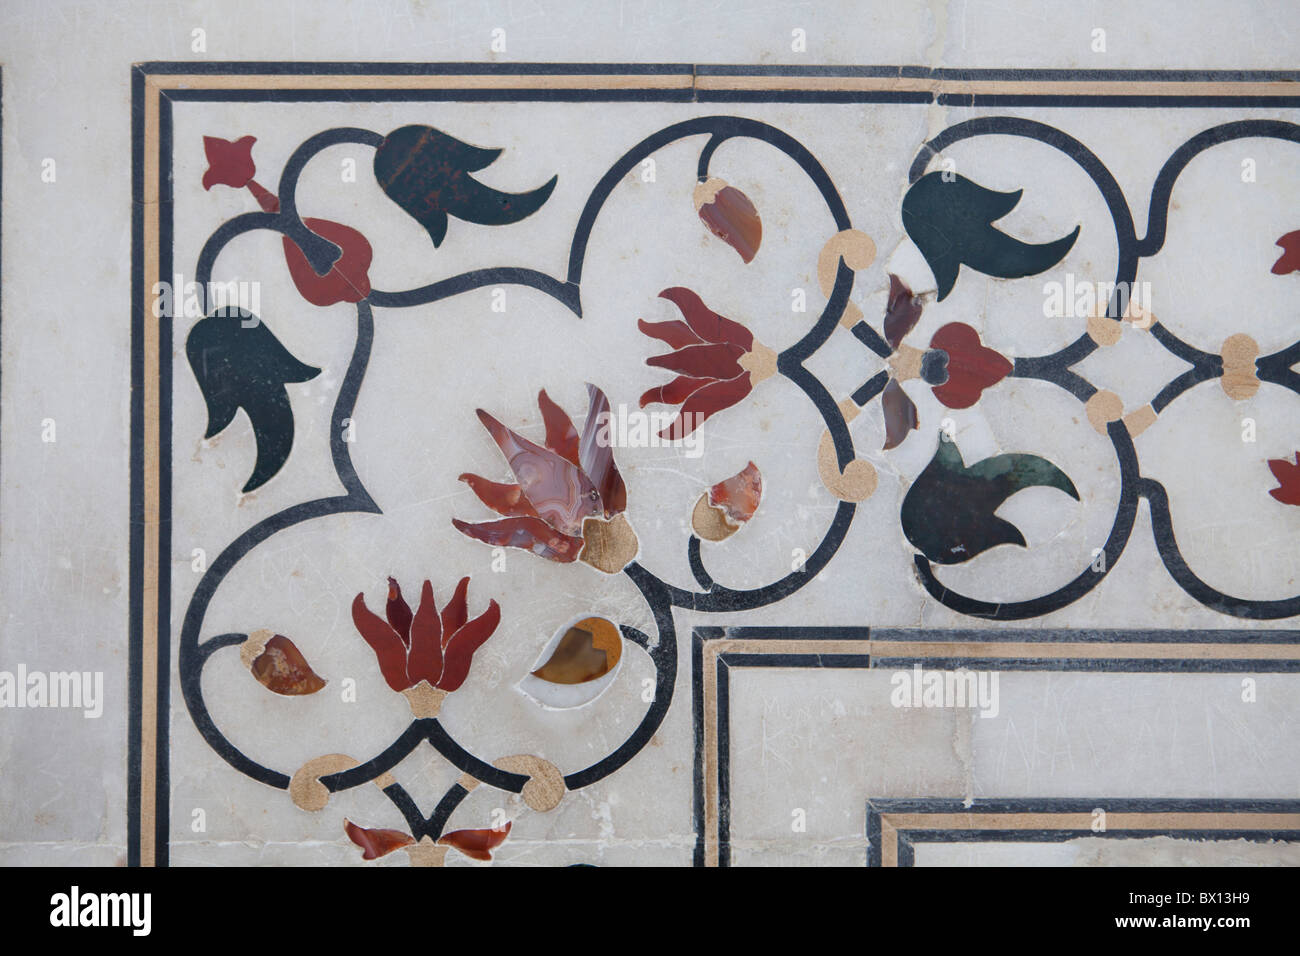 Taj Mahal Flowers Etch A Sketch Art Unique Nostalgic Room Decor 